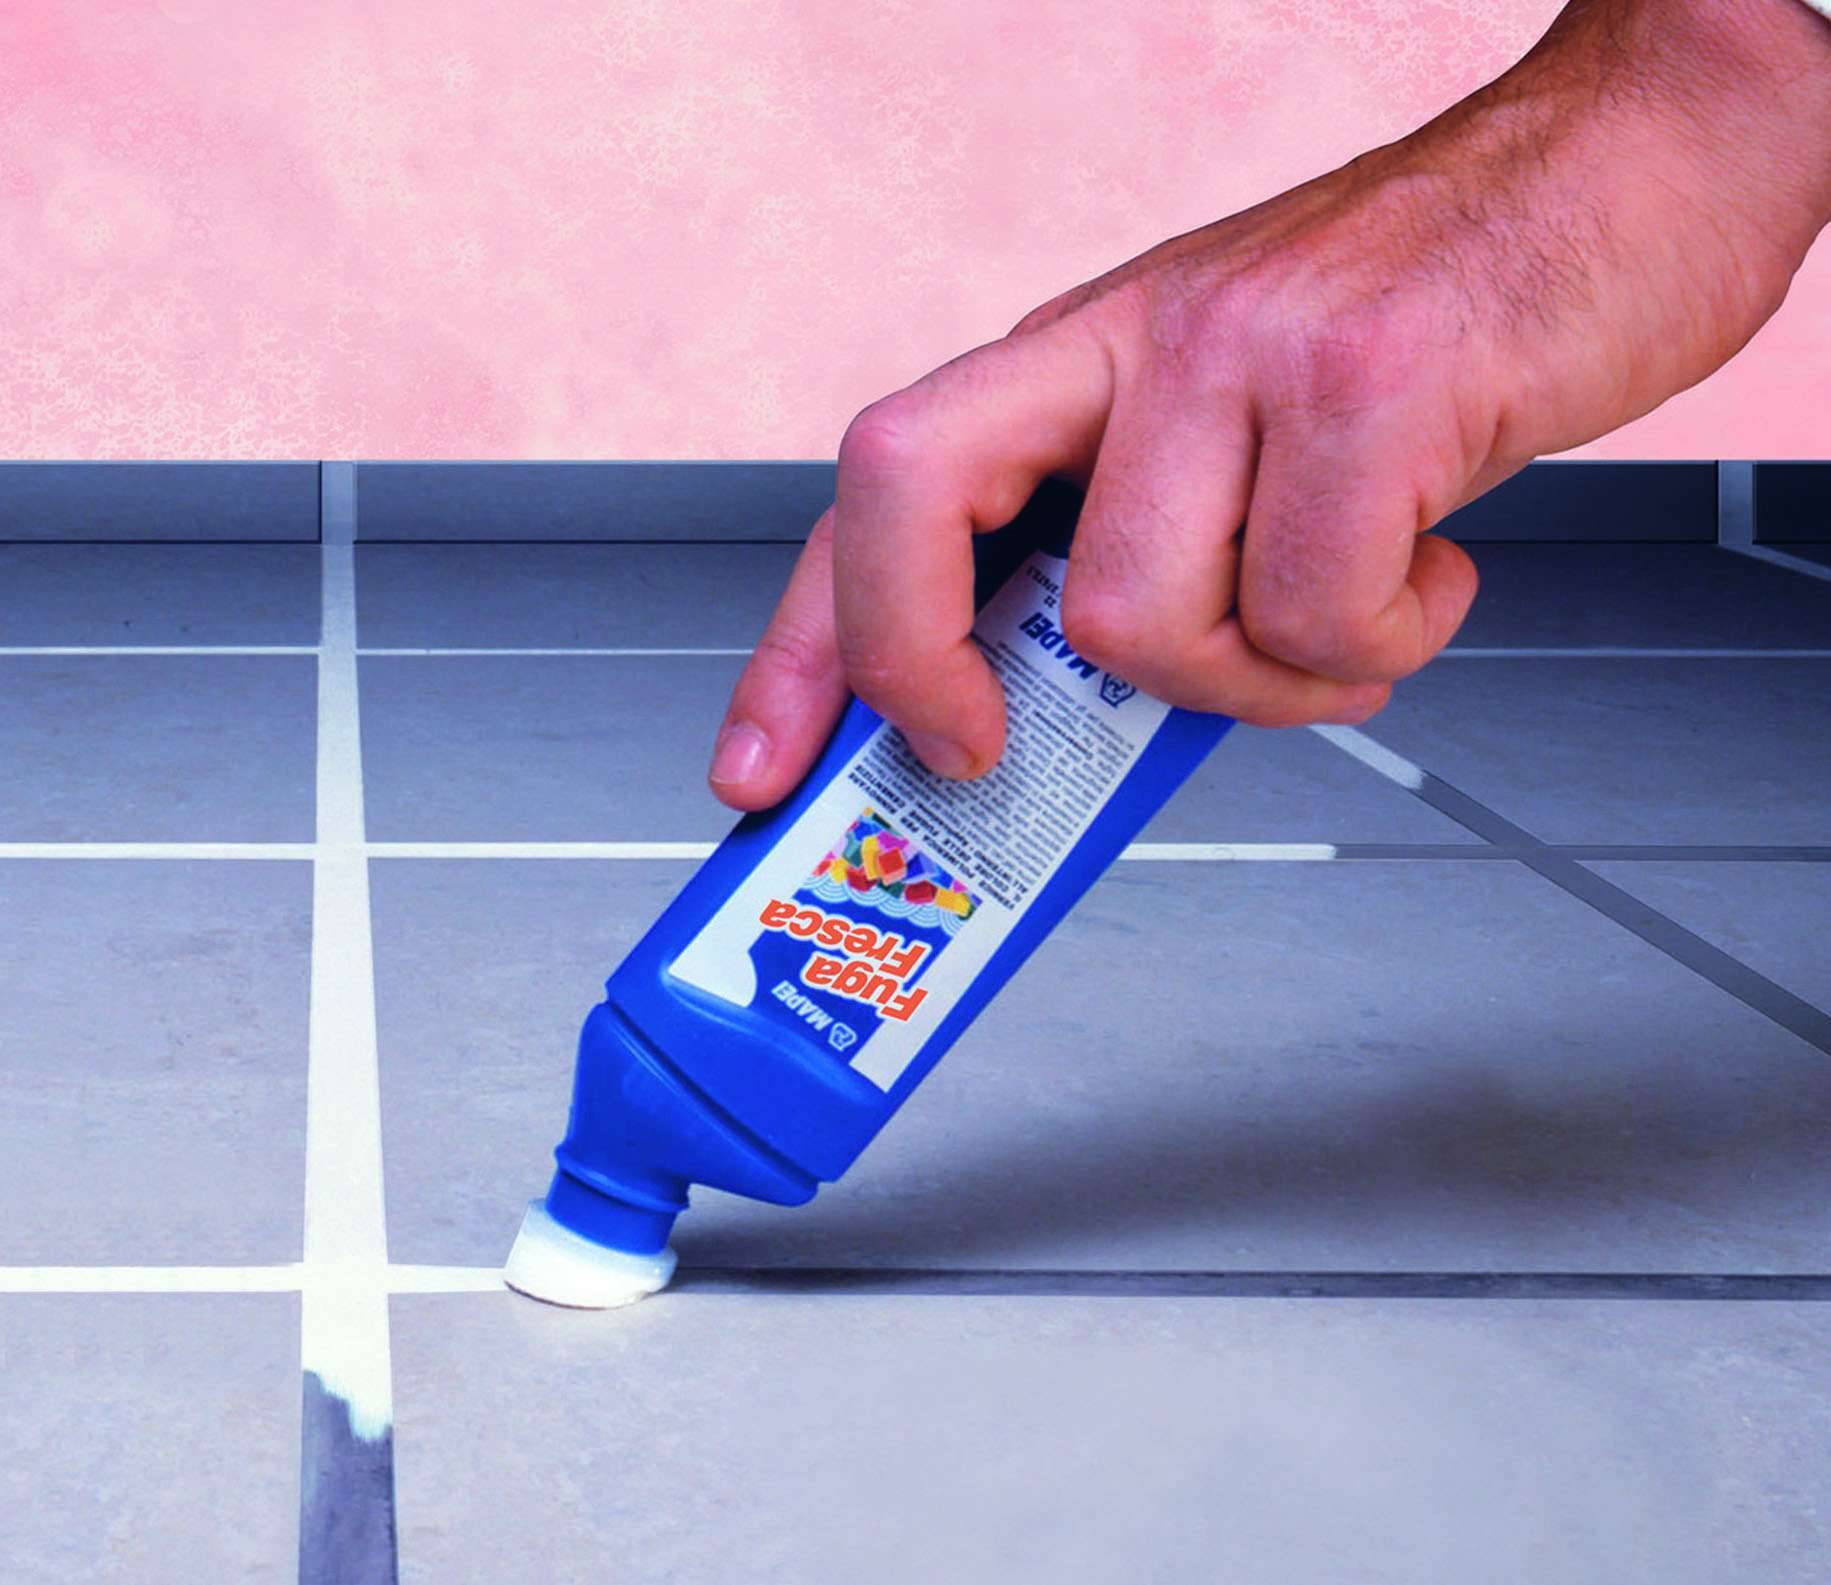 Как очистить плитку в ванной (кафель на стенах и полу): народные средства и бытовая химия для чистки кафельного покрытия